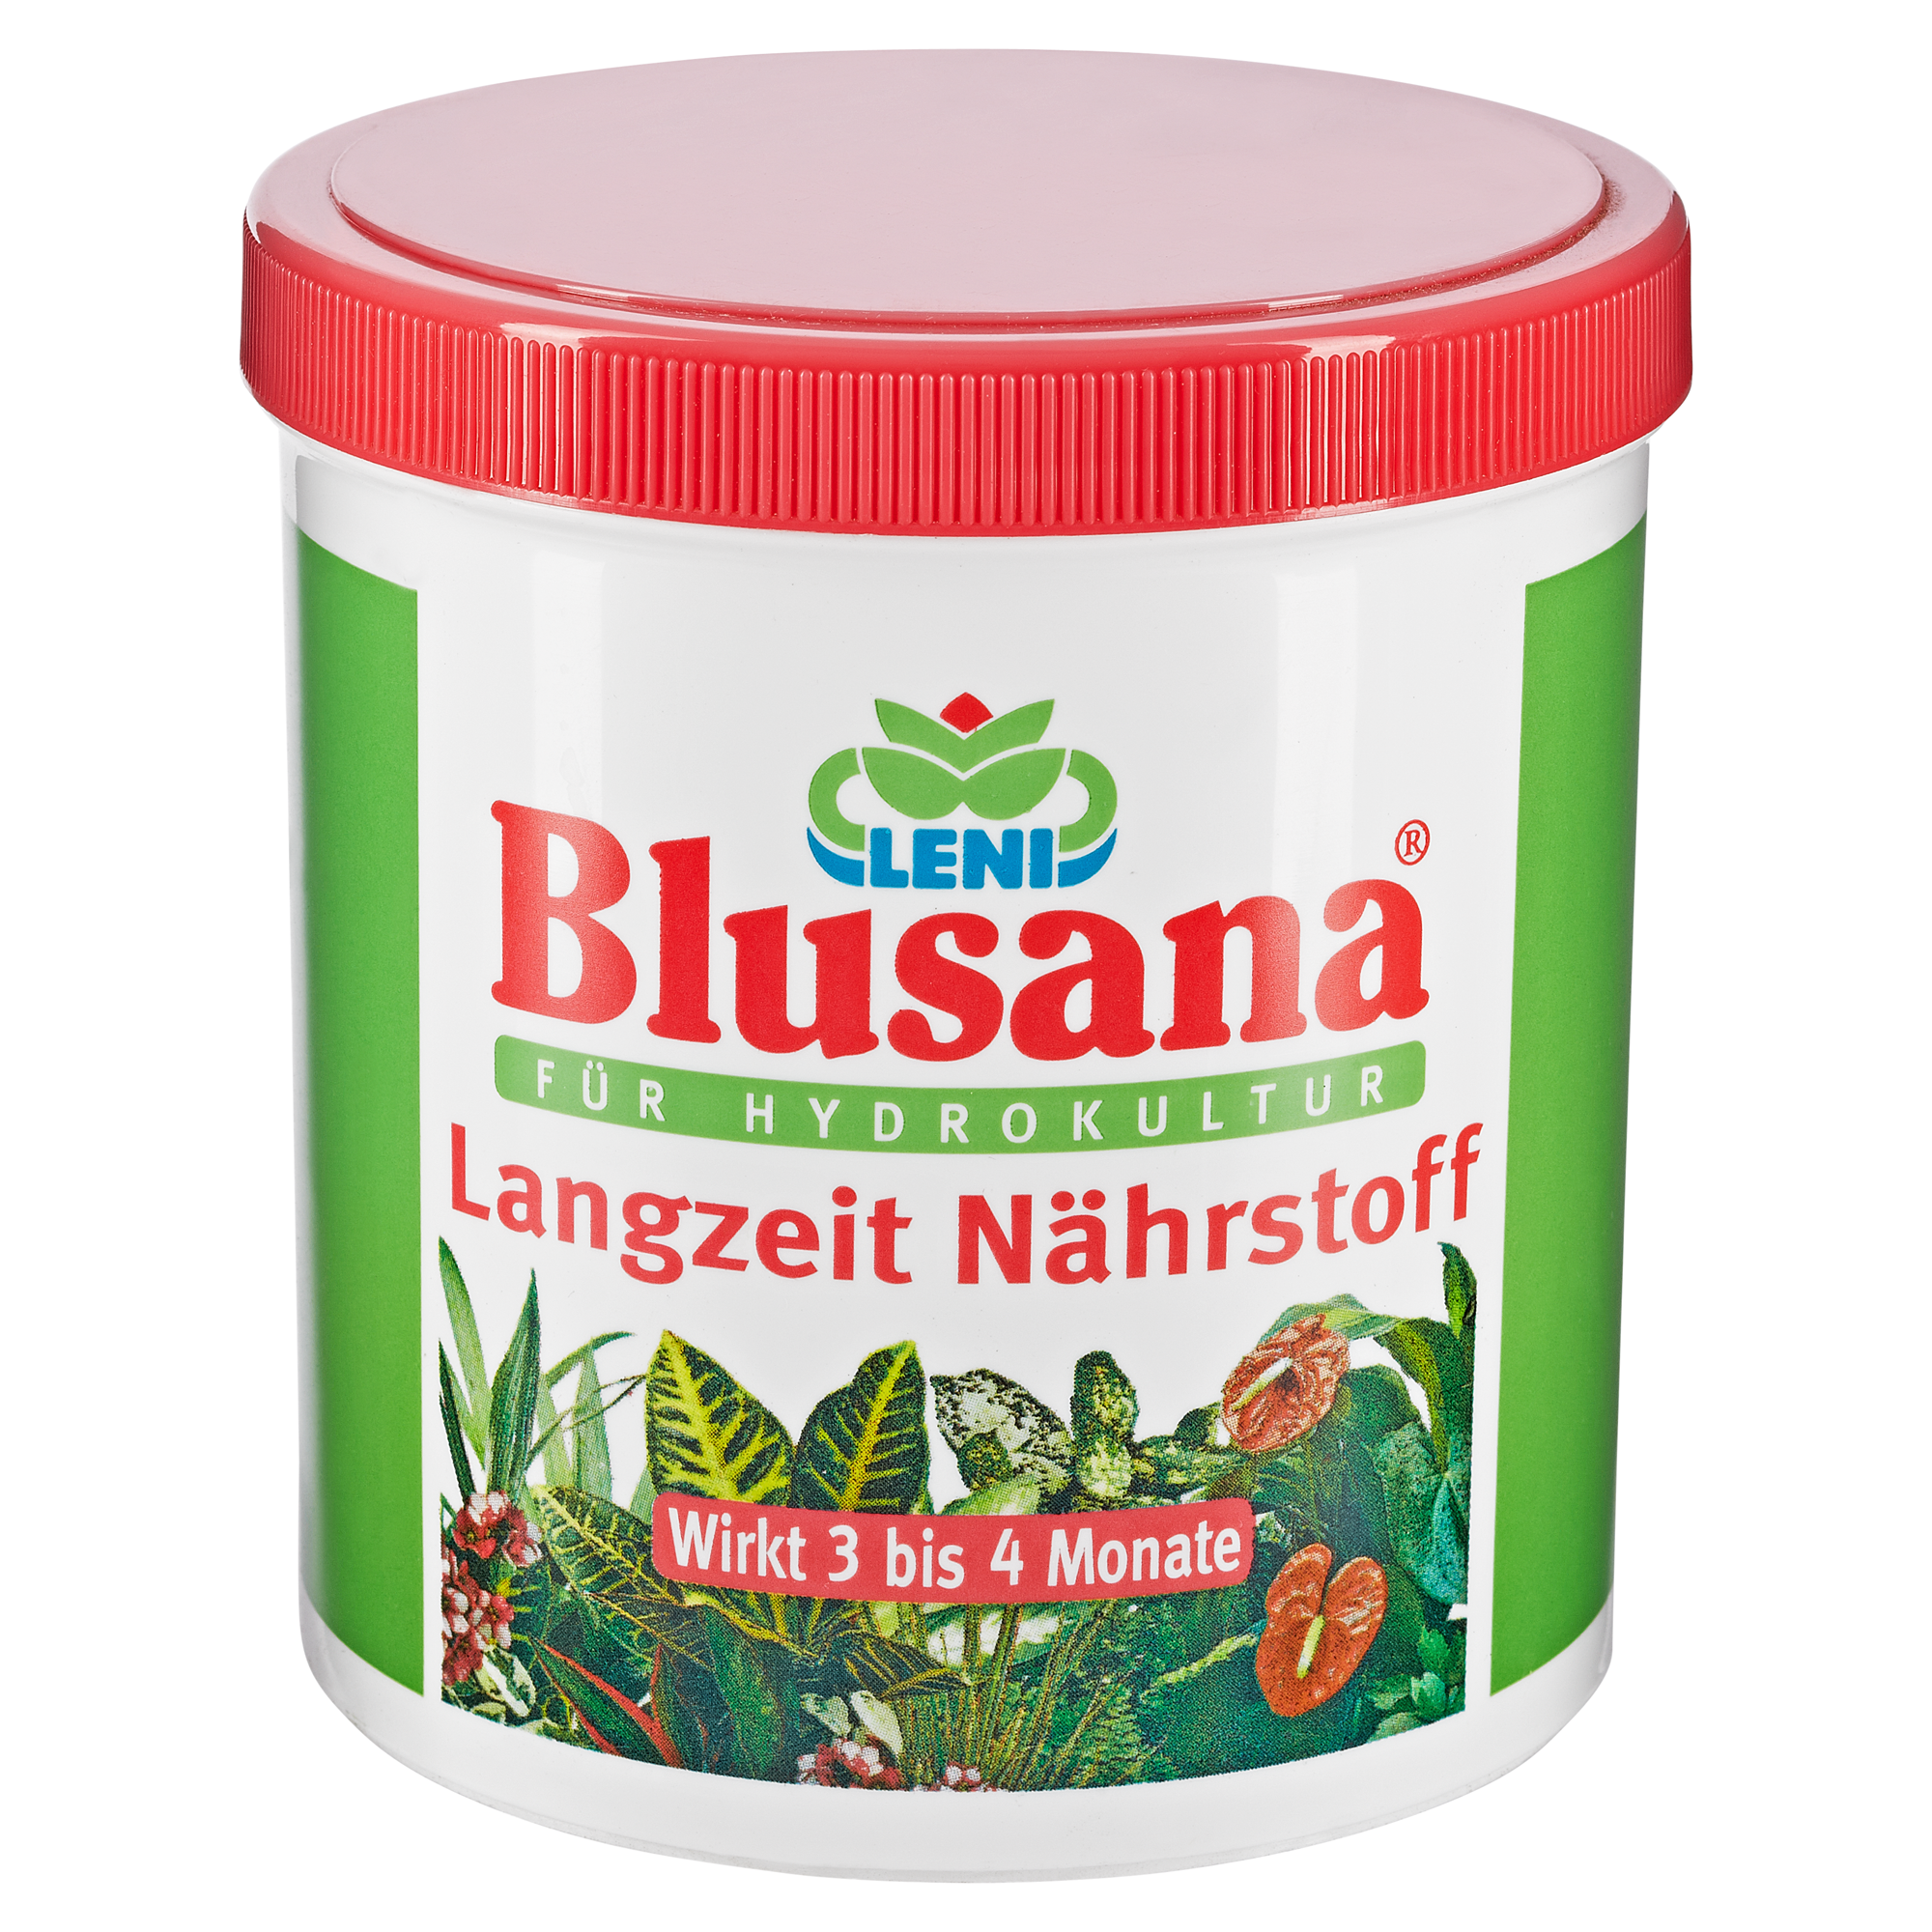 Pflanzendünger "Blusana" für Hydrokulturen 800 ml + product picture